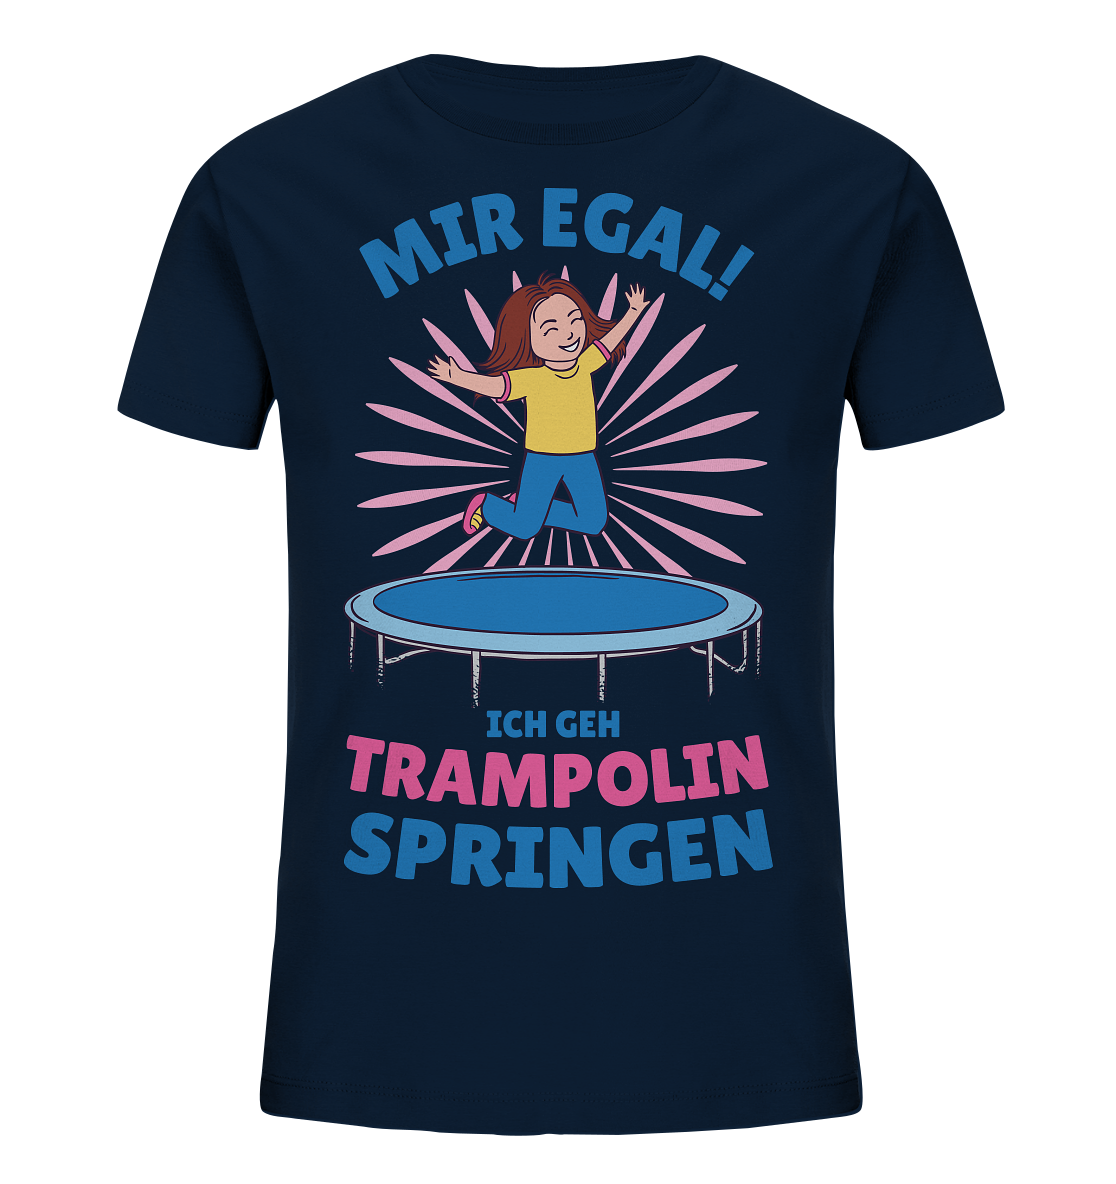 Mir egal ich geh Trampolin springen  - Kids Organic Shirt